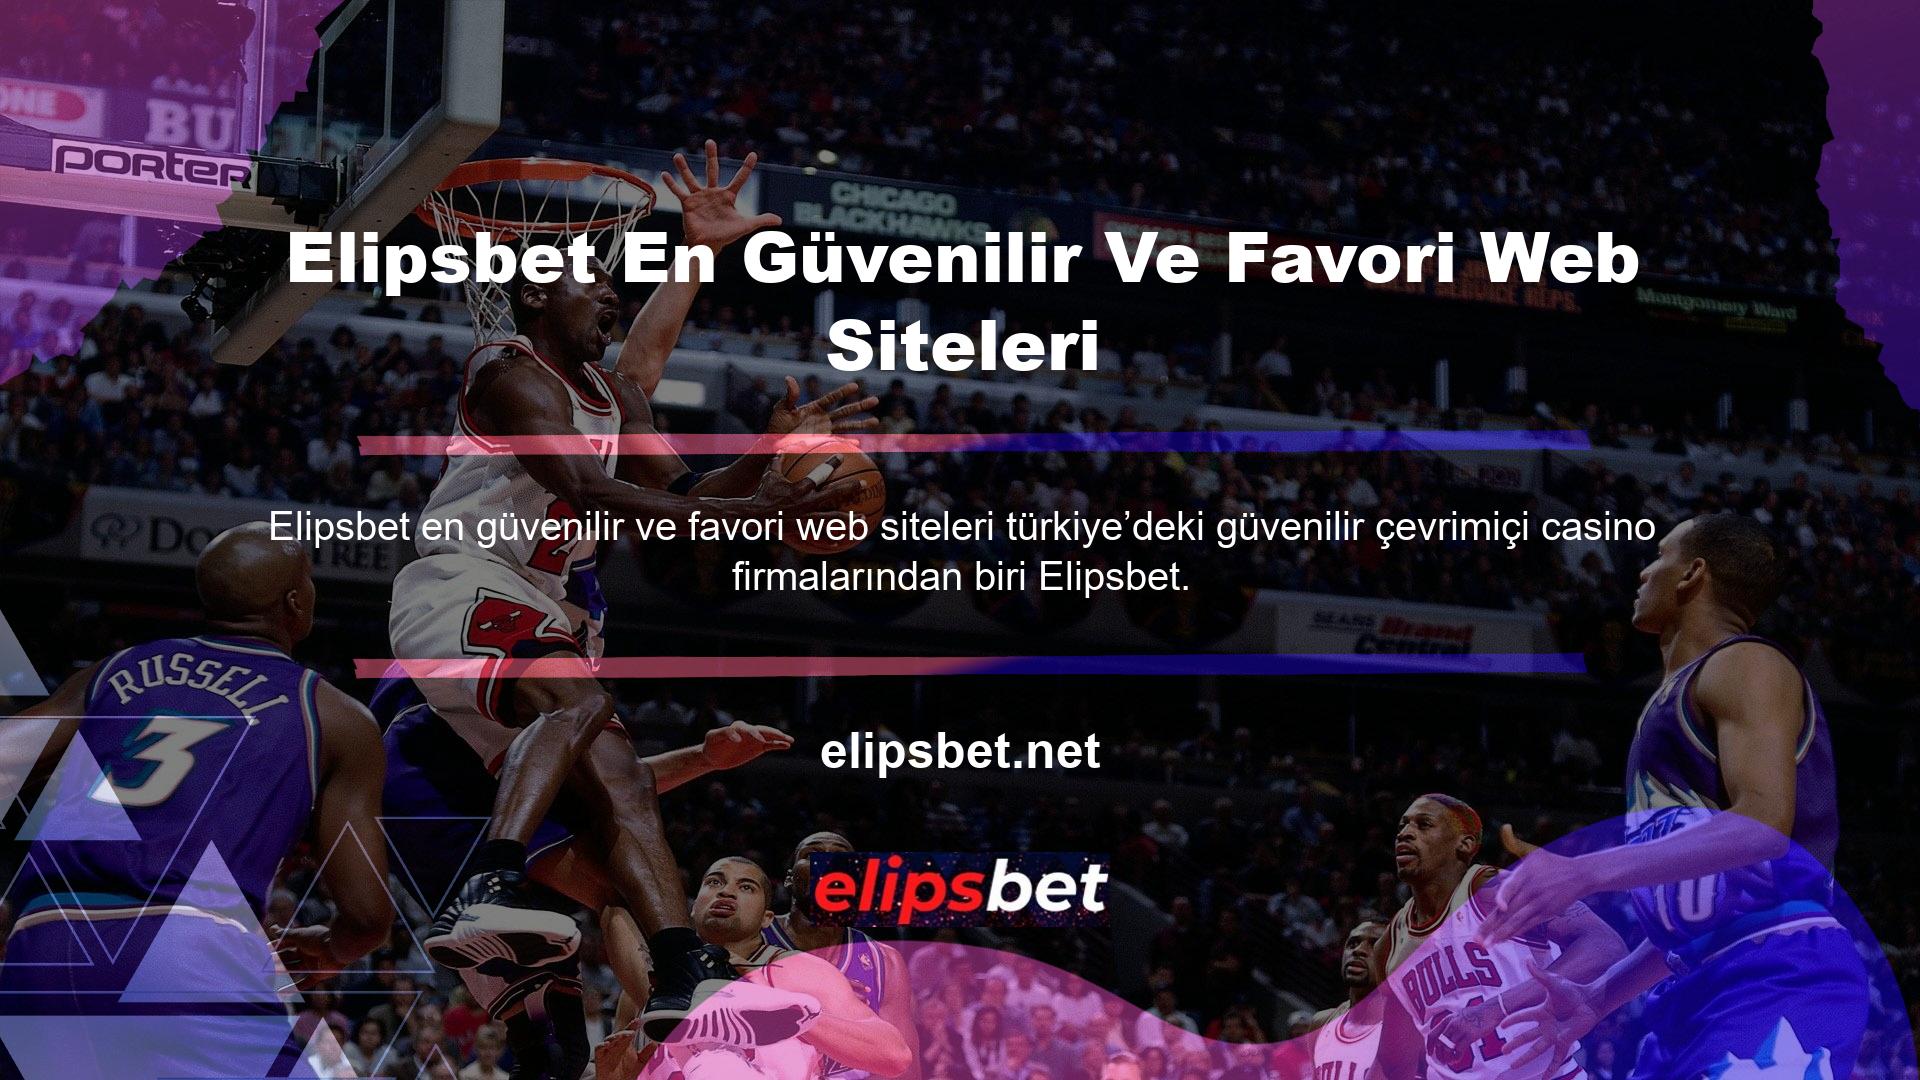 Elipsbet, Türk poker tutkunları arasında tanınmış ve beğenilen bir casino şirketidir